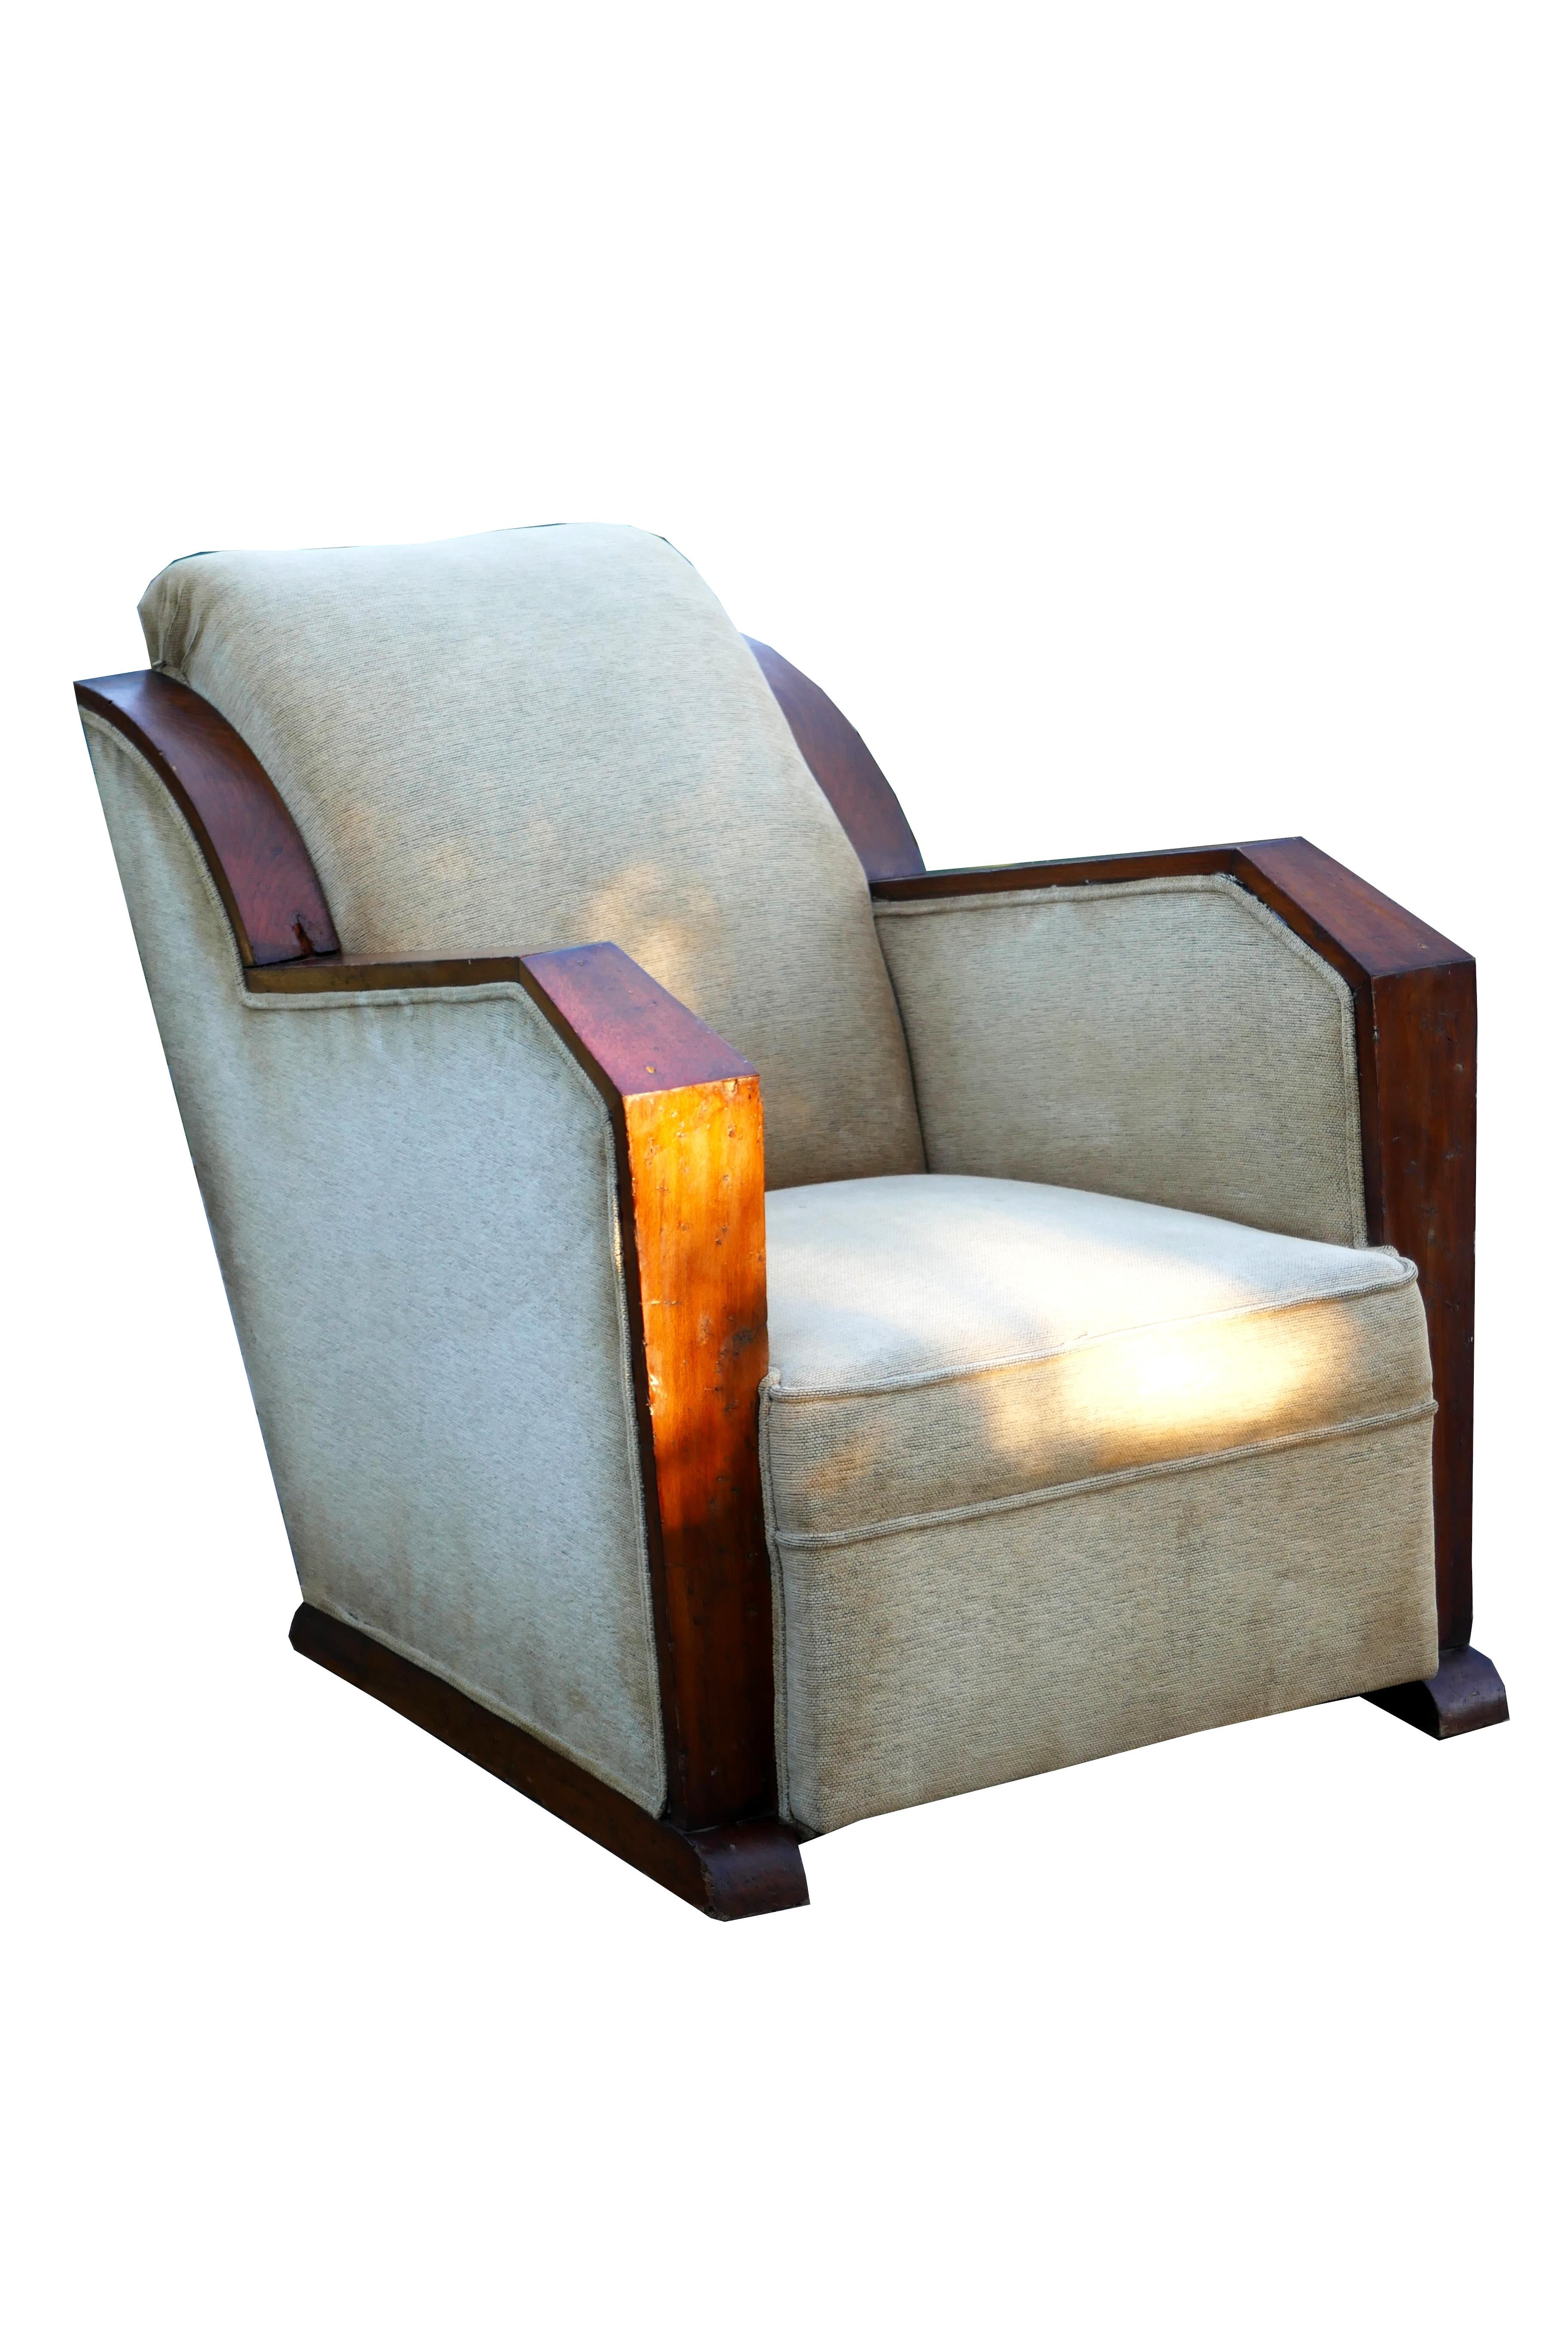 Ein französischer Art Deco Sessel möglich Andre Domin & Marcel Genevrieve für Maison Dominique 1920/30.
Nicht perfekter Holzrahmen und Originalstoff aus der Zeit.
Die Arme sind nach außen abgewinkelt, 57 cm breit an den Schultern  und 71 cm in der